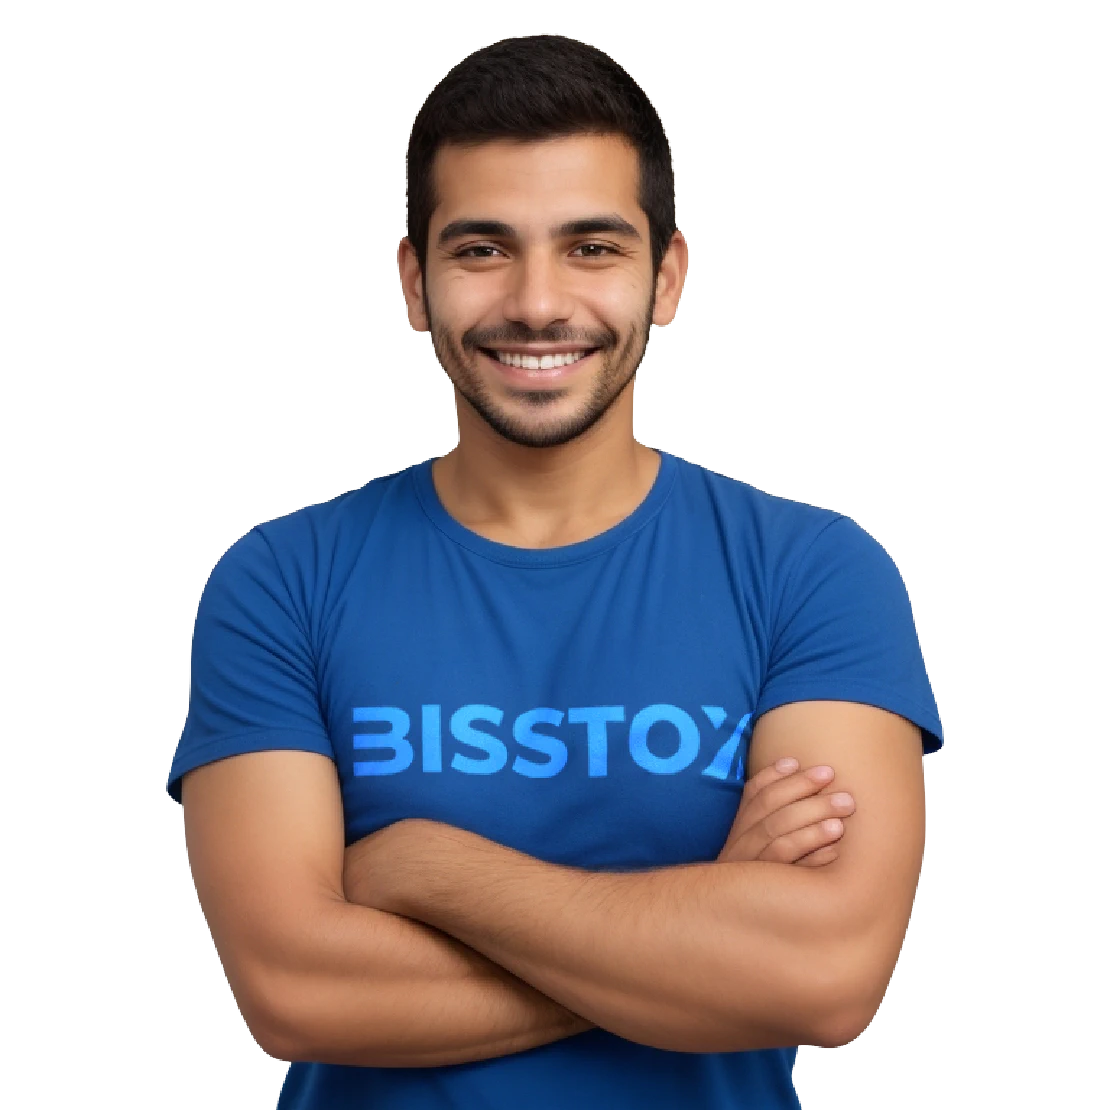 Bisstox - Ayúdándote a ser mejor en lo que haces